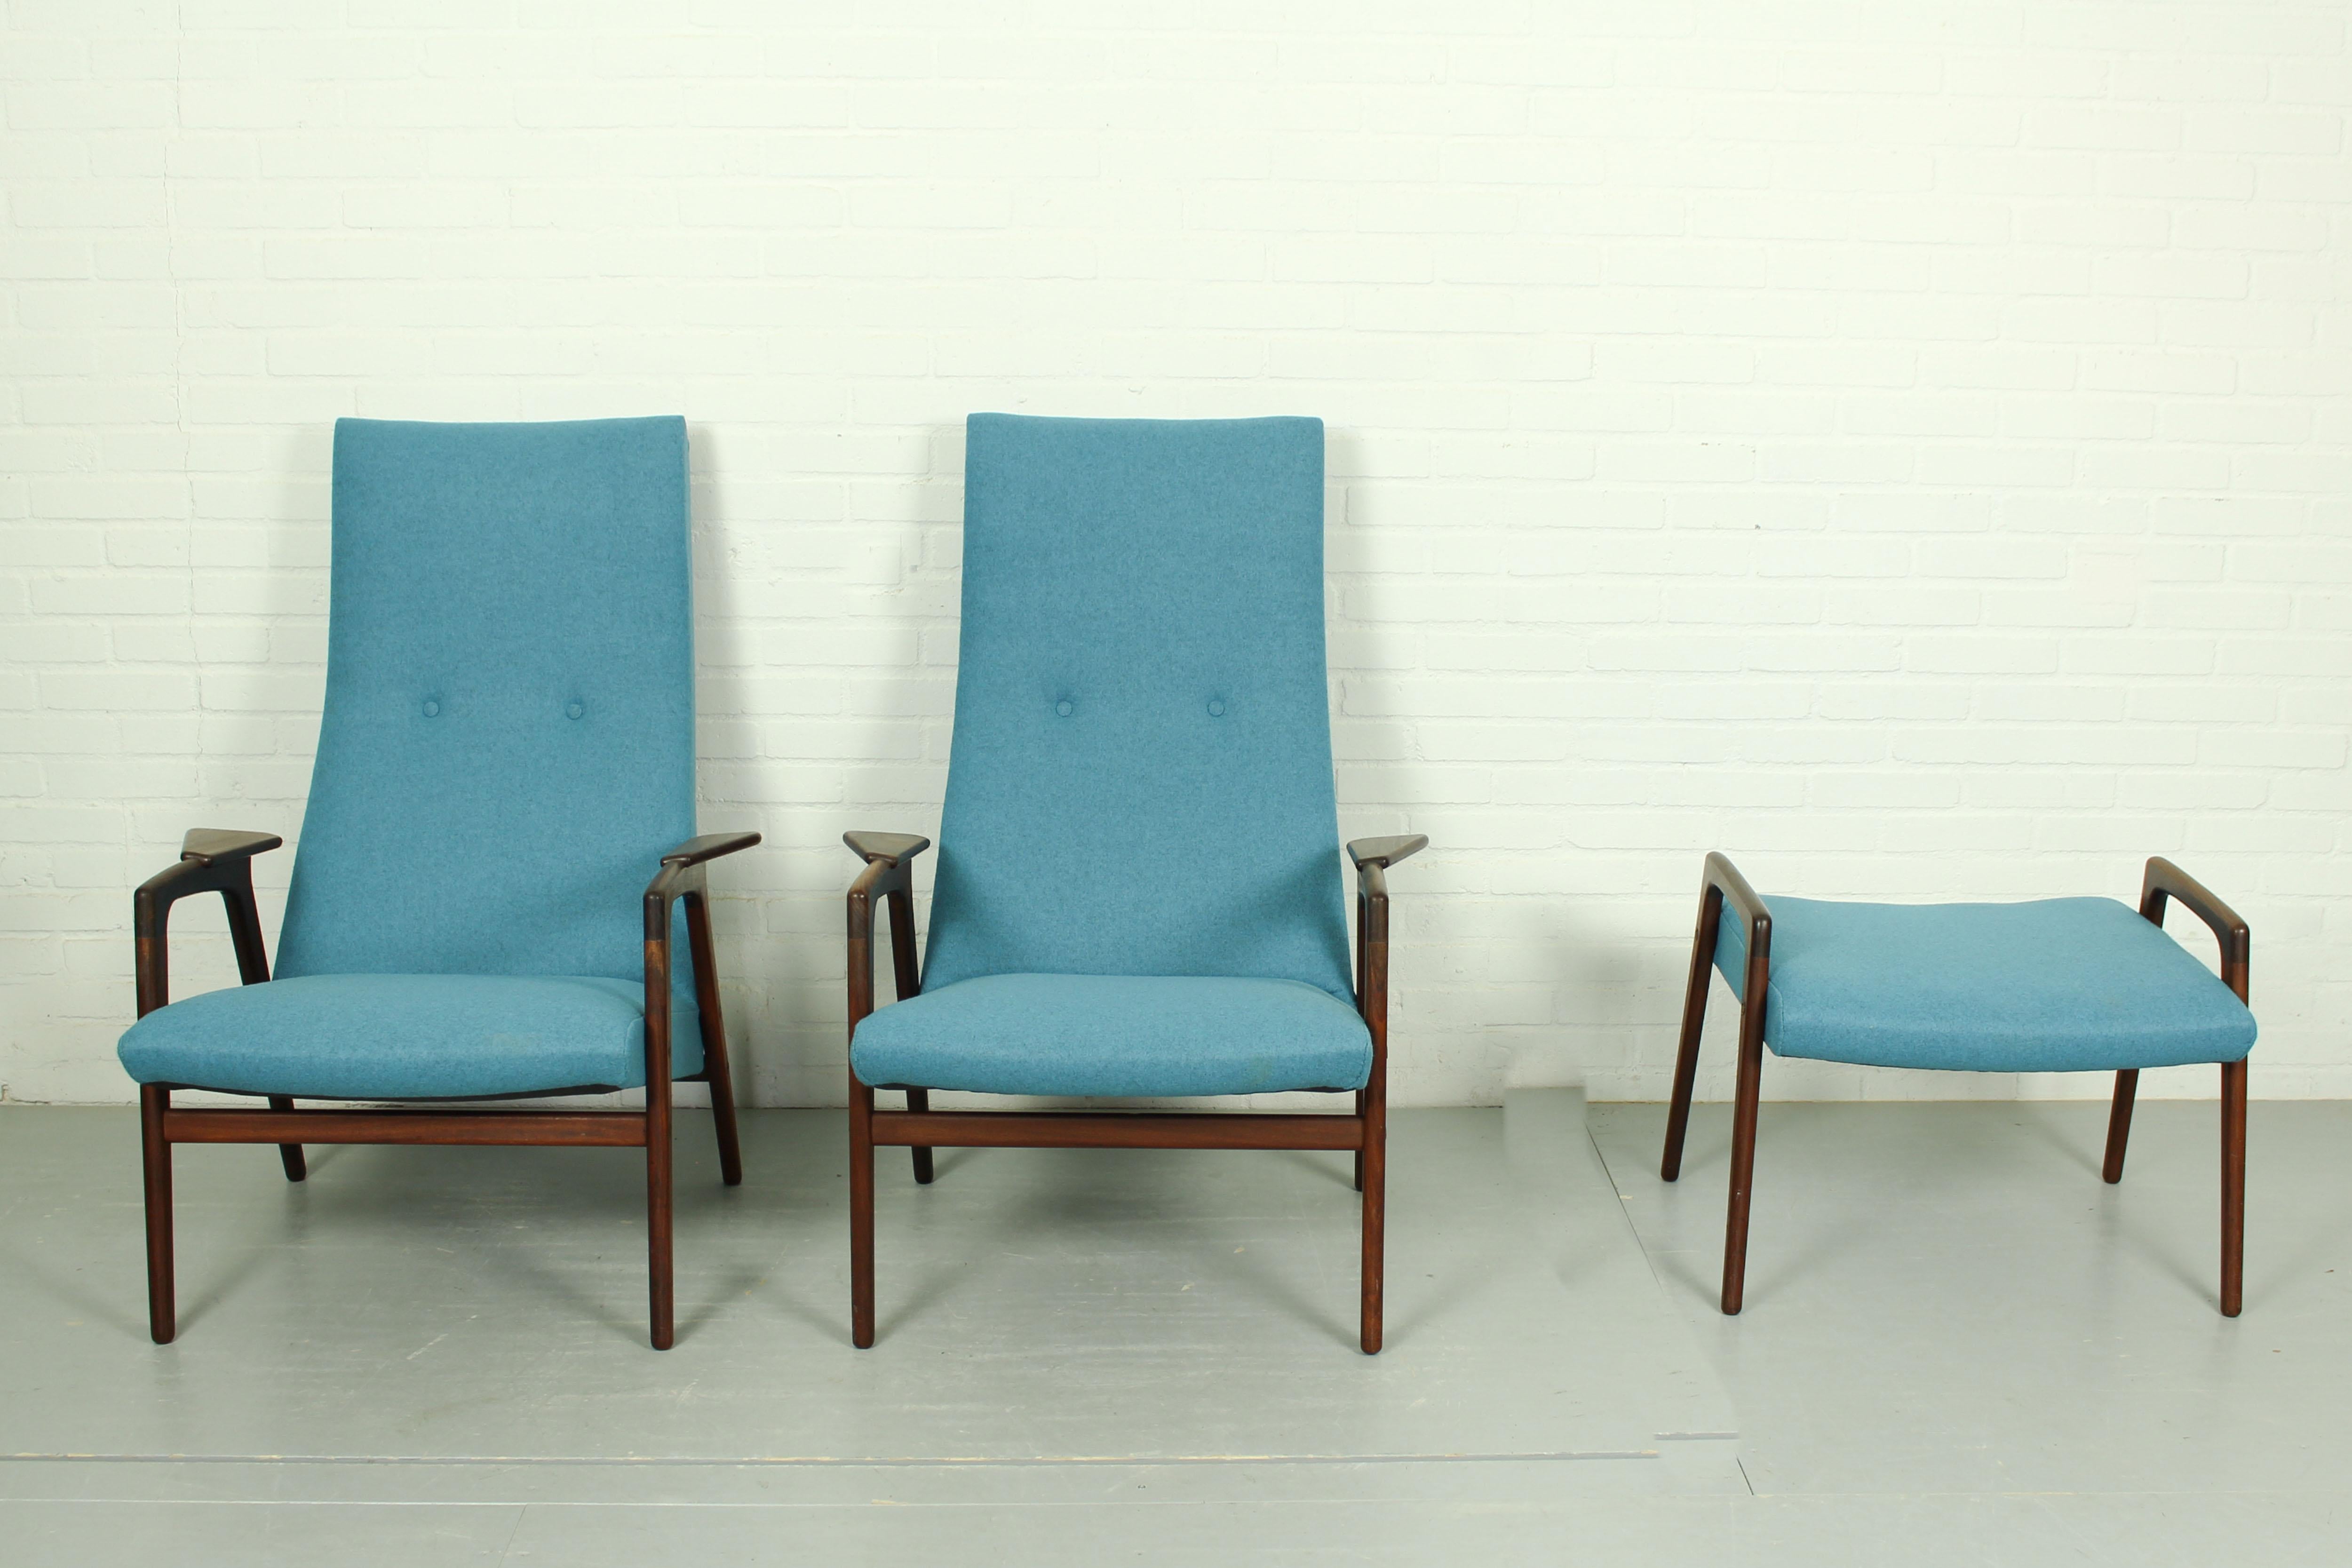 Dieses Set aus 2 dänischen Loungesesseln mit passender Ottomane wurde vom schwedischen Designer Yngve Ekström entworfen und von Pastoe in den 1960er Jahren hergestellt. Die Stücke wurden mit einem schönen blauen Wollfilz neu gepolstert, und der